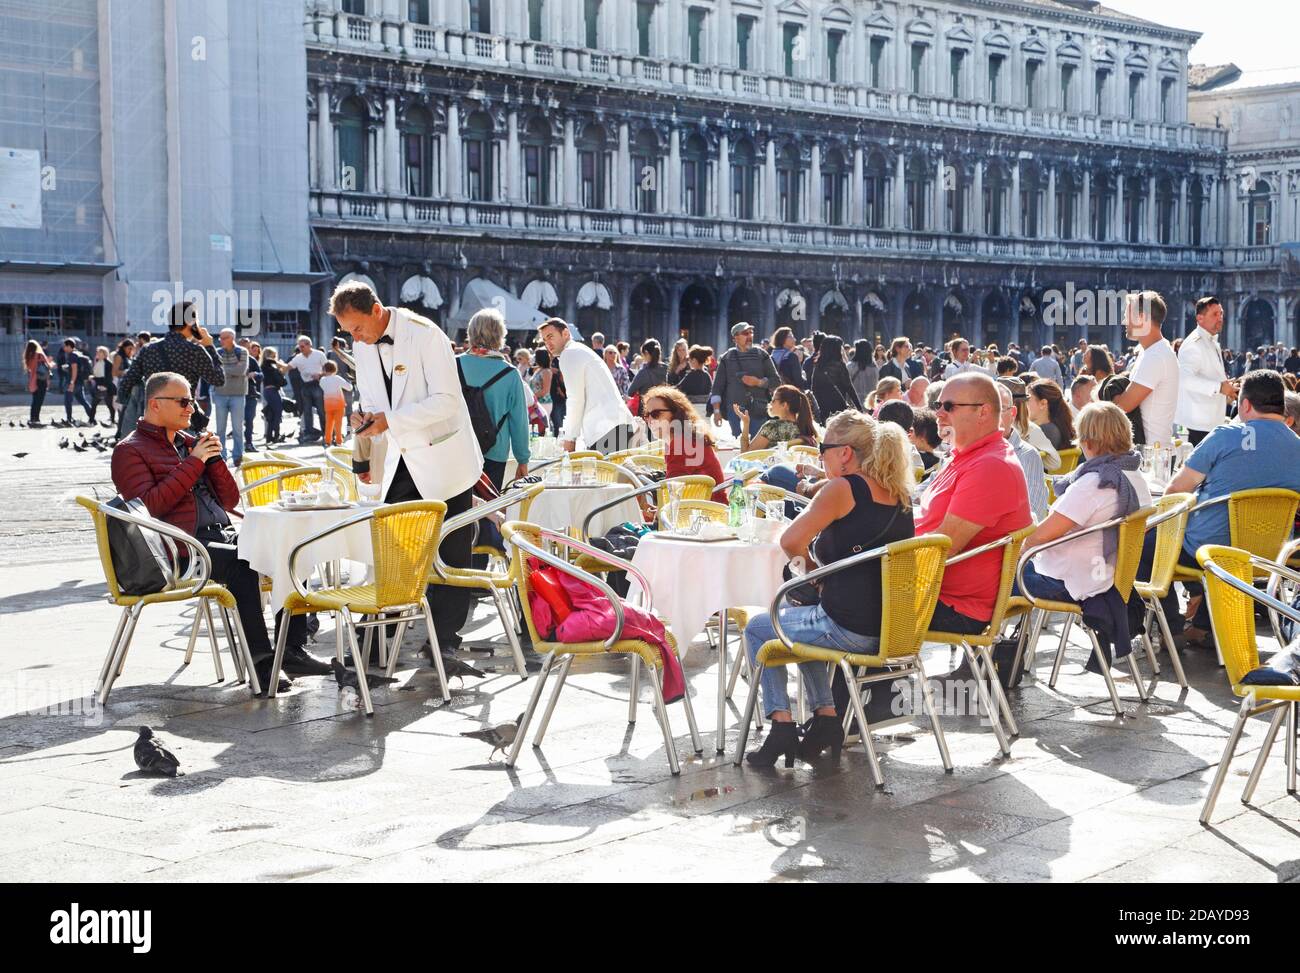 Personnes dans un restaurant sur la piazza San Marco, à Venise Italie Banque D'Images